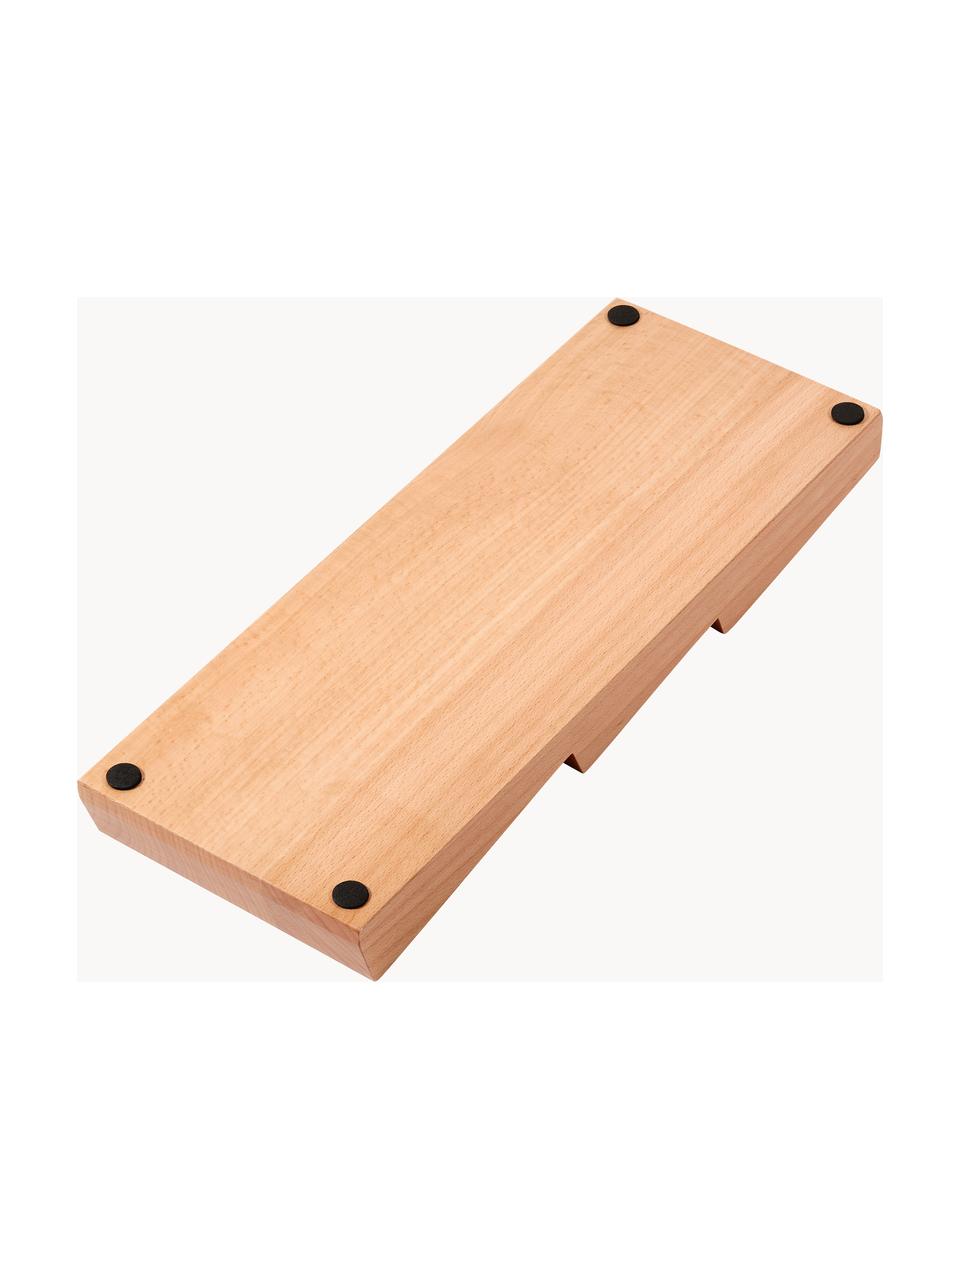 Vložka do zásuvky z bukového dřeva Cook, Bukové dřevo, Světlé dřevo, Š 41 cm, V 5 cm